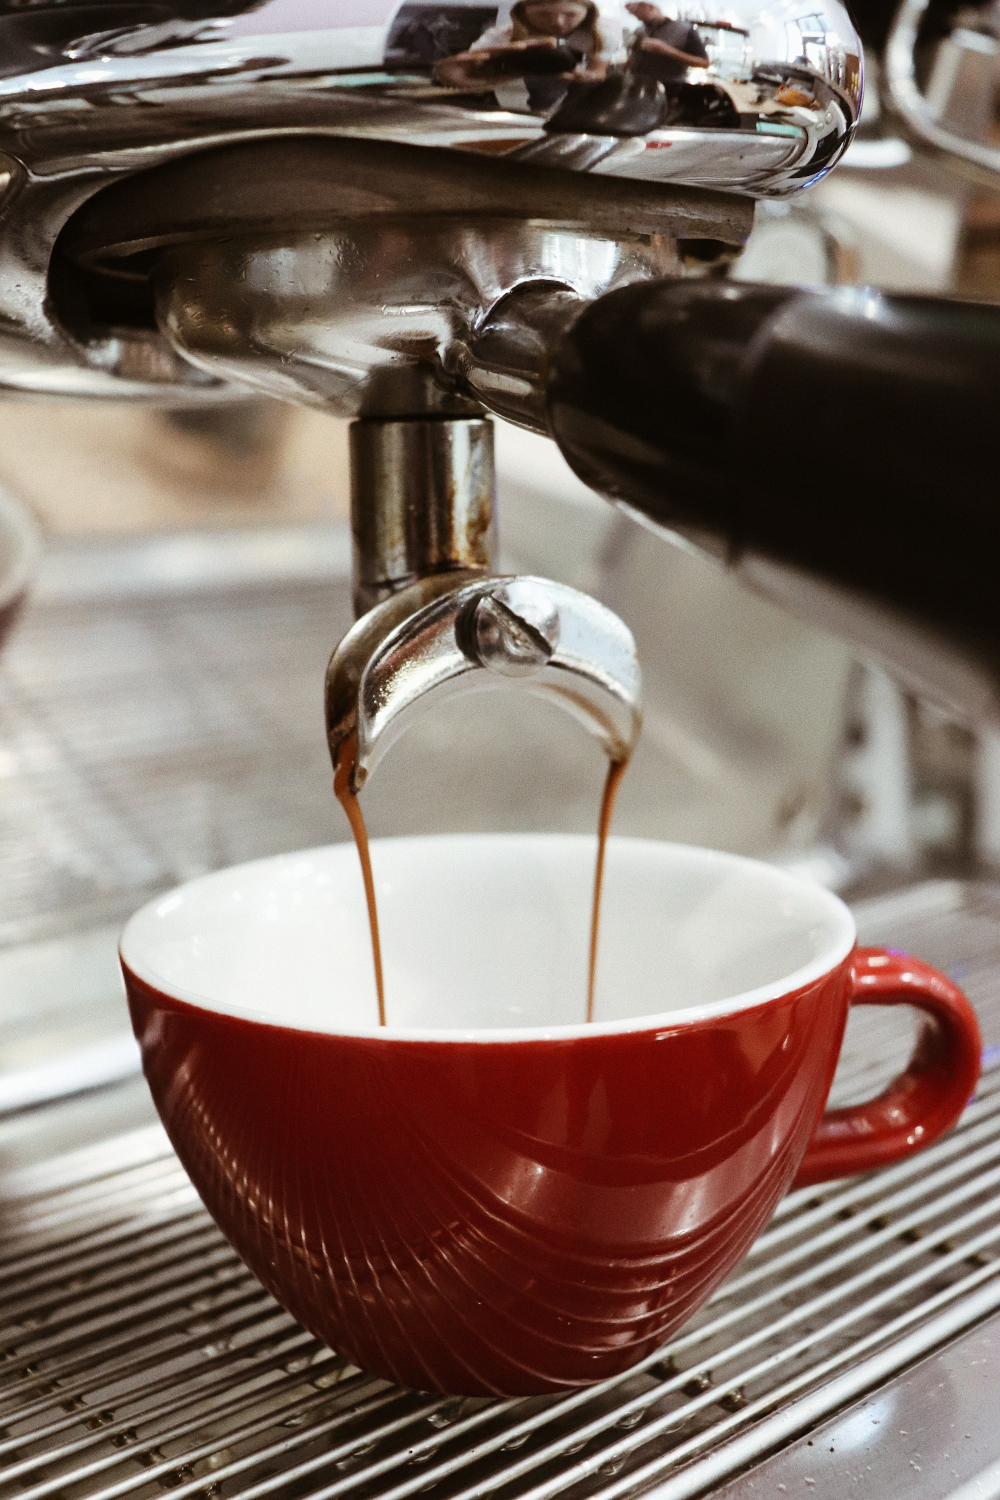 100% επιτυχία: To ένα και μοναδικό μυστικό για να φτιάχνεις τον καφέ σου καλύτερο και από το διασημότερο café της πόλης